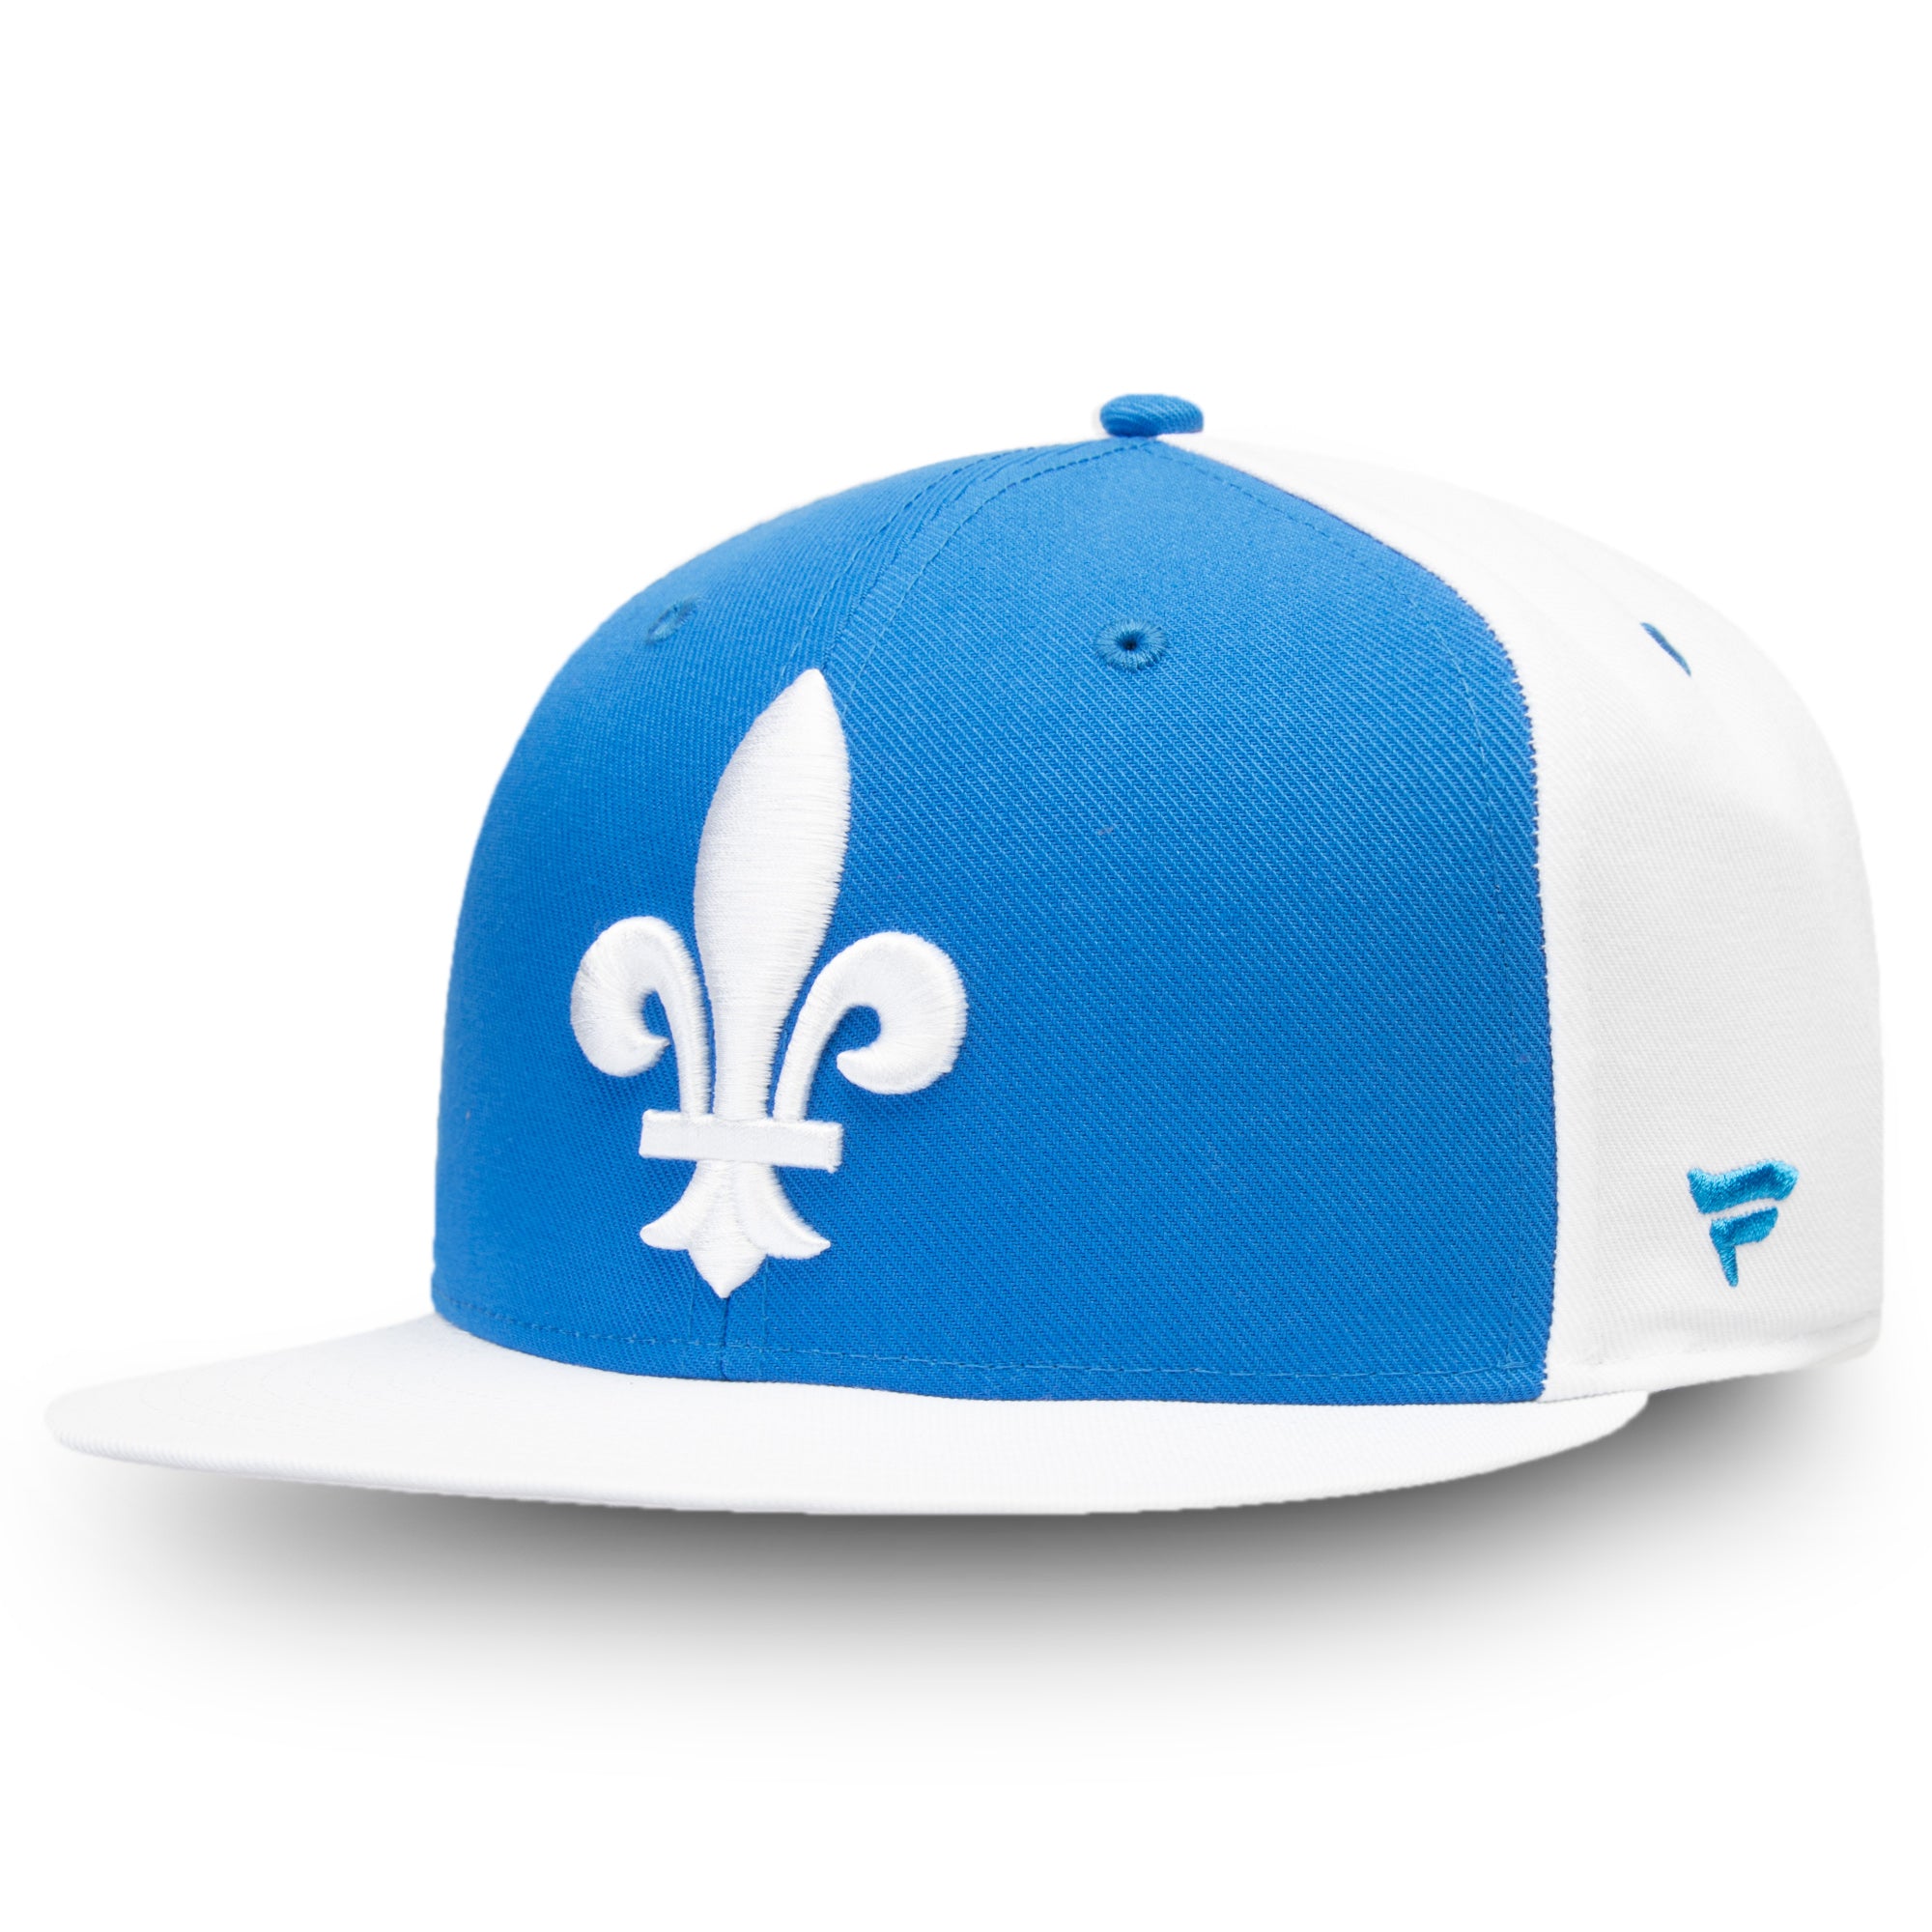 New Fanatics Quebec Nordiques Vintage Snapback Hat